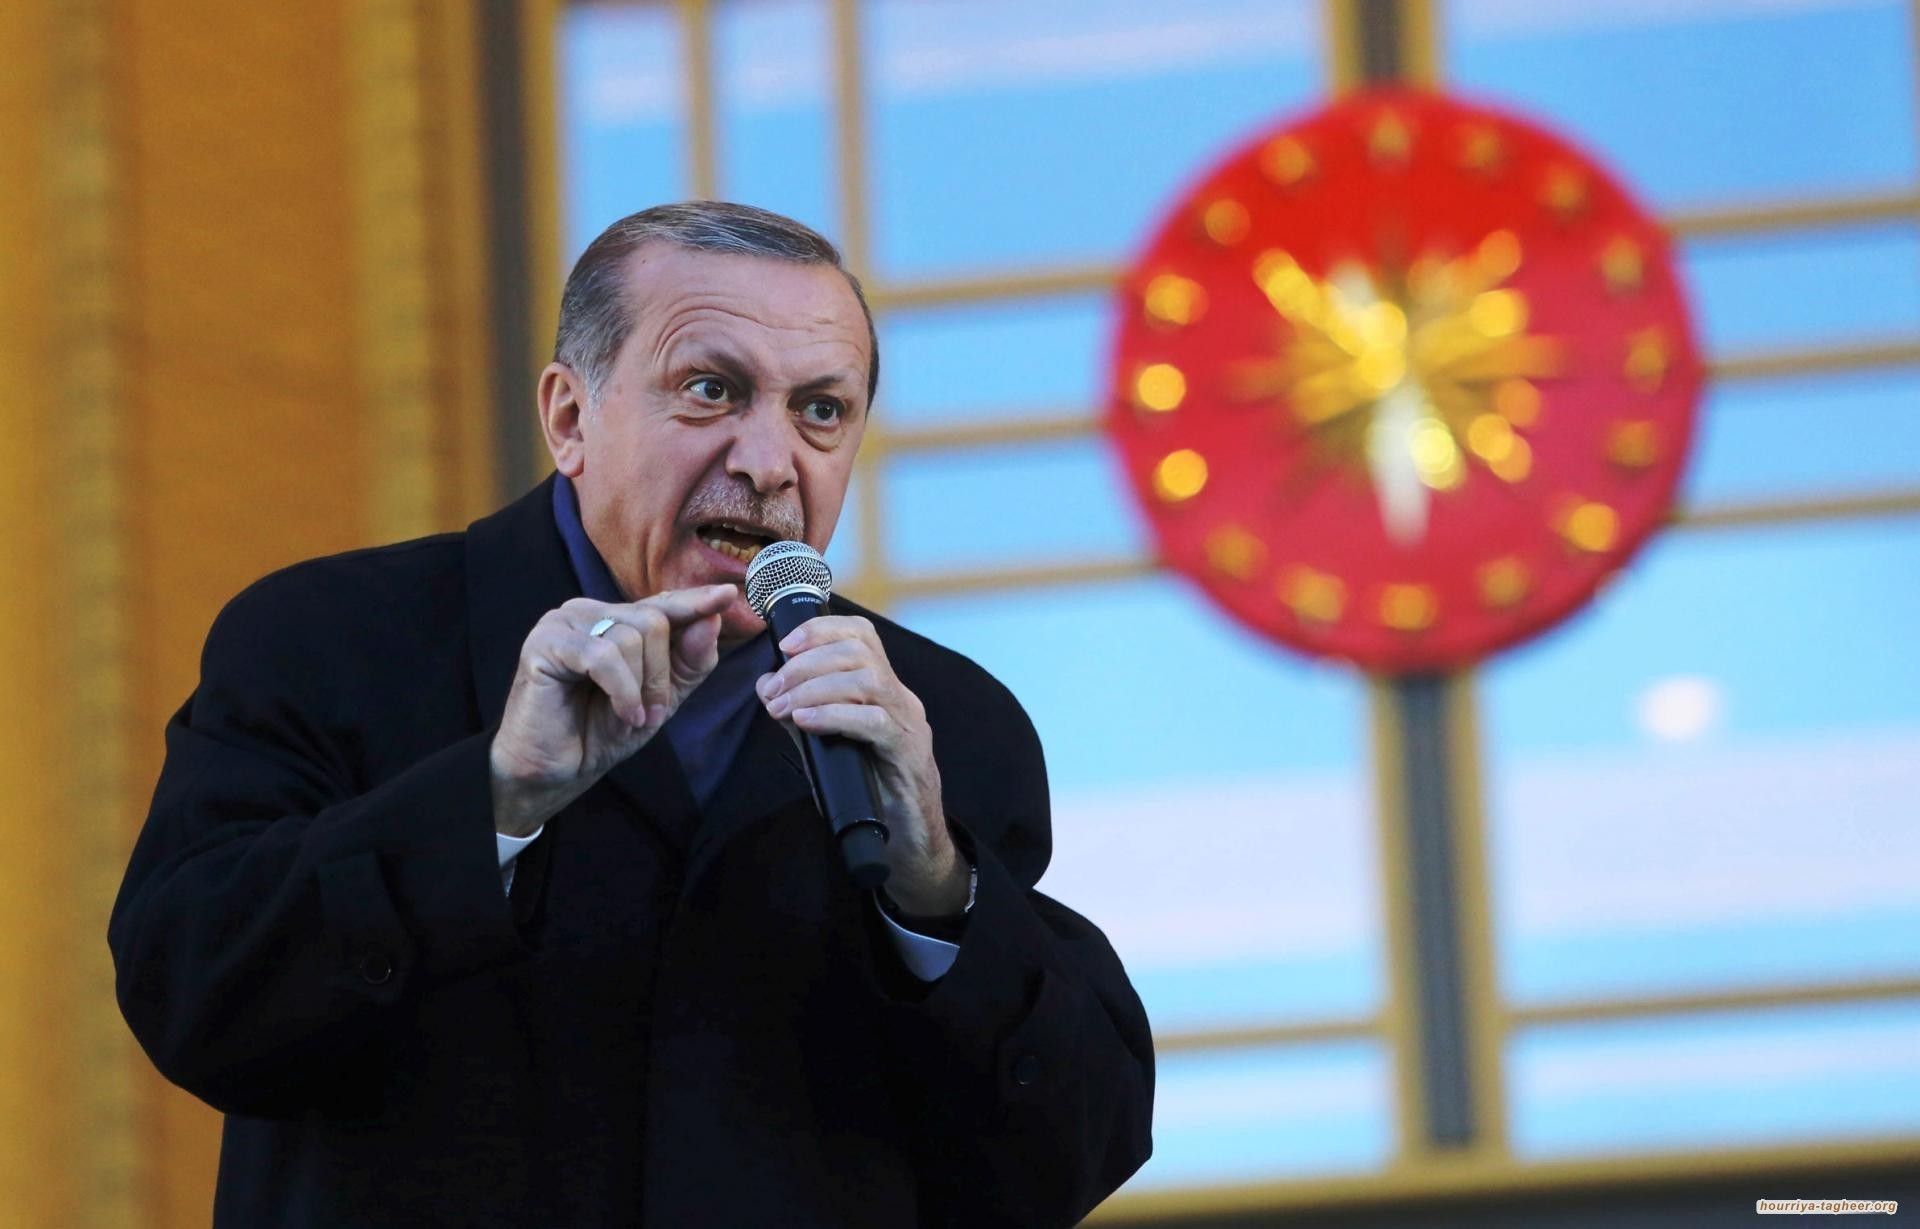 أردوغان يهاجم السعودية على موقفها التافه من صفقة القرن